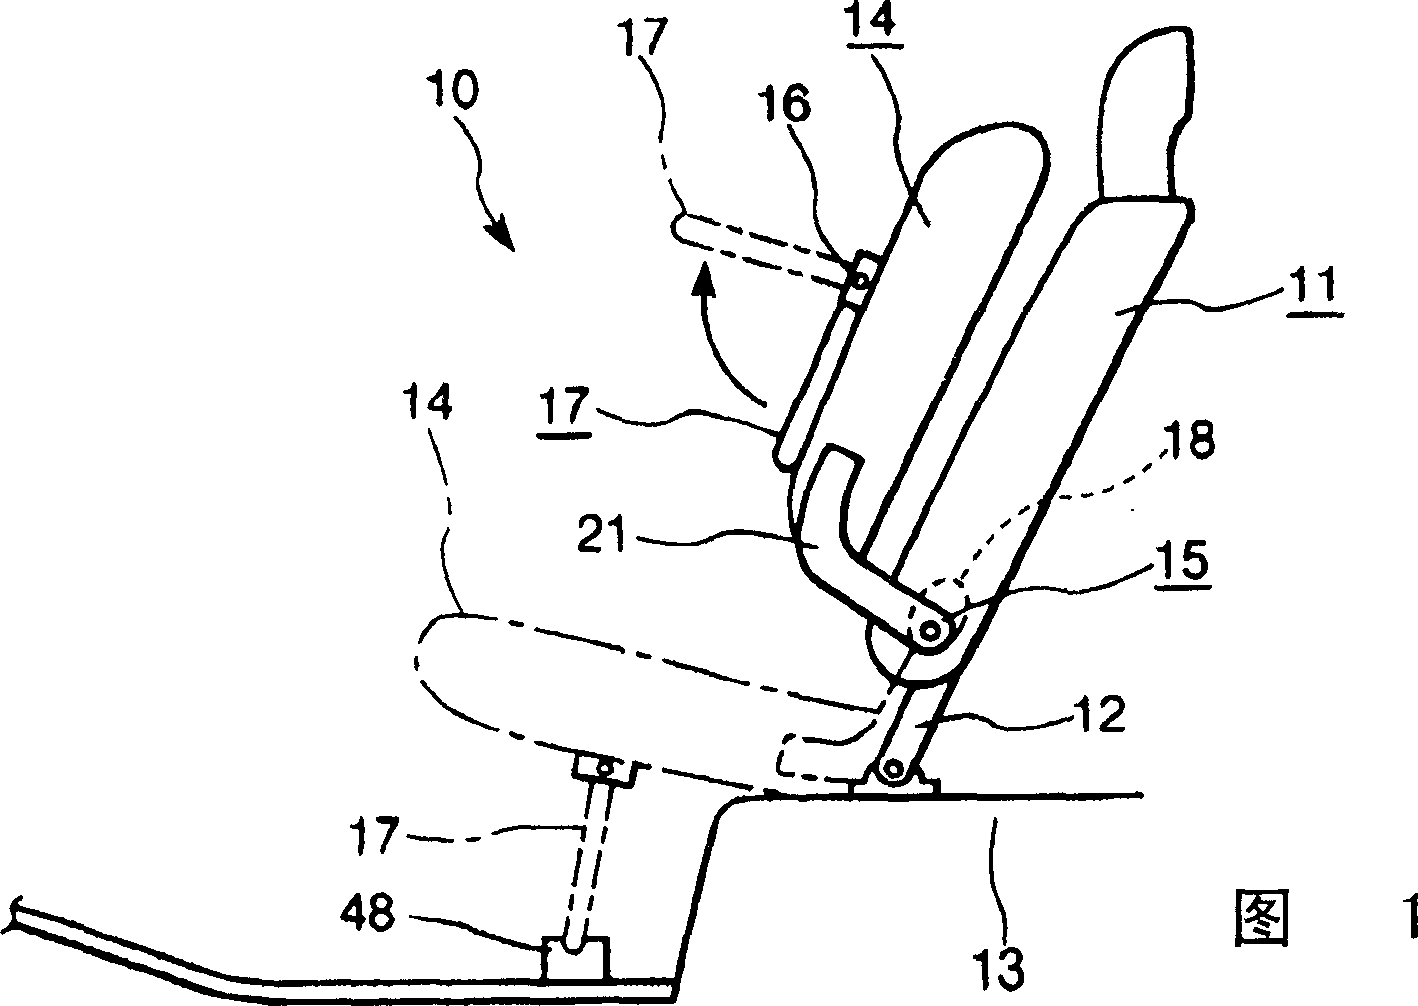 Tip-up Vehicle seat